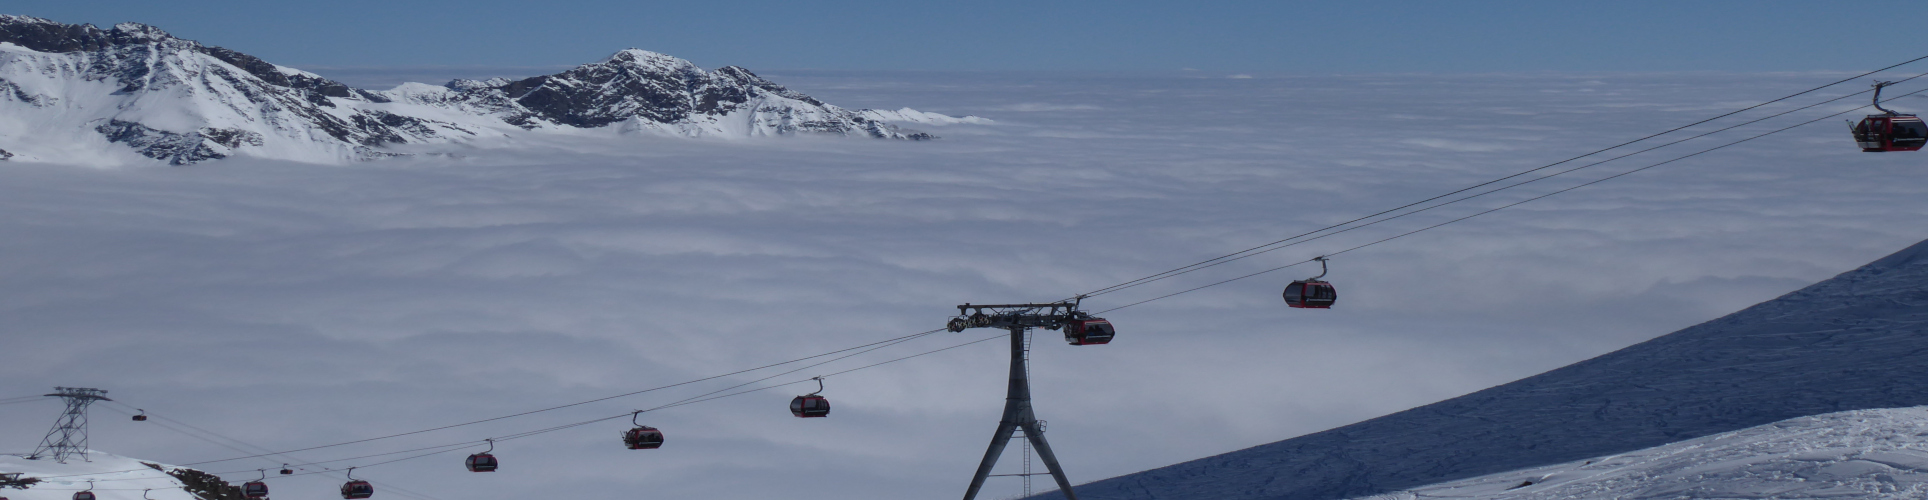 STUBAIER GLETSCHER – Skiwochenende – mit absoluter Schneegarantie – ab Freitag Früh 